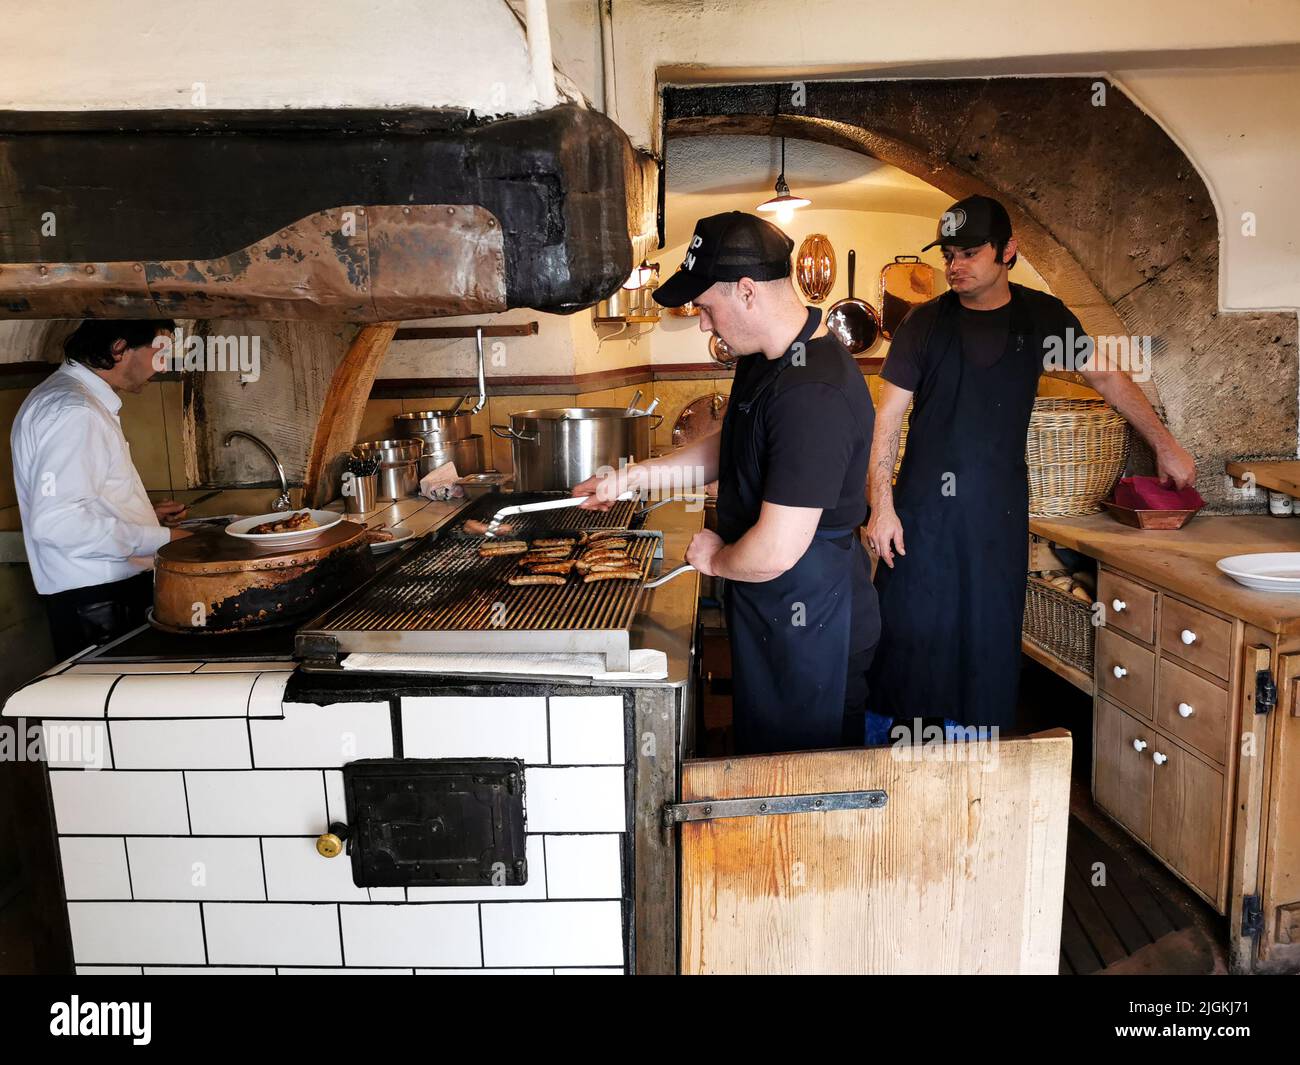 Regensburg, ALLEMAGNE - 09.17.2019: Les chefs cuisiniers cuisinent avec des saucisses allemandes traditionnelles sur le grill dans une cuisine de pub. Banque D'Images